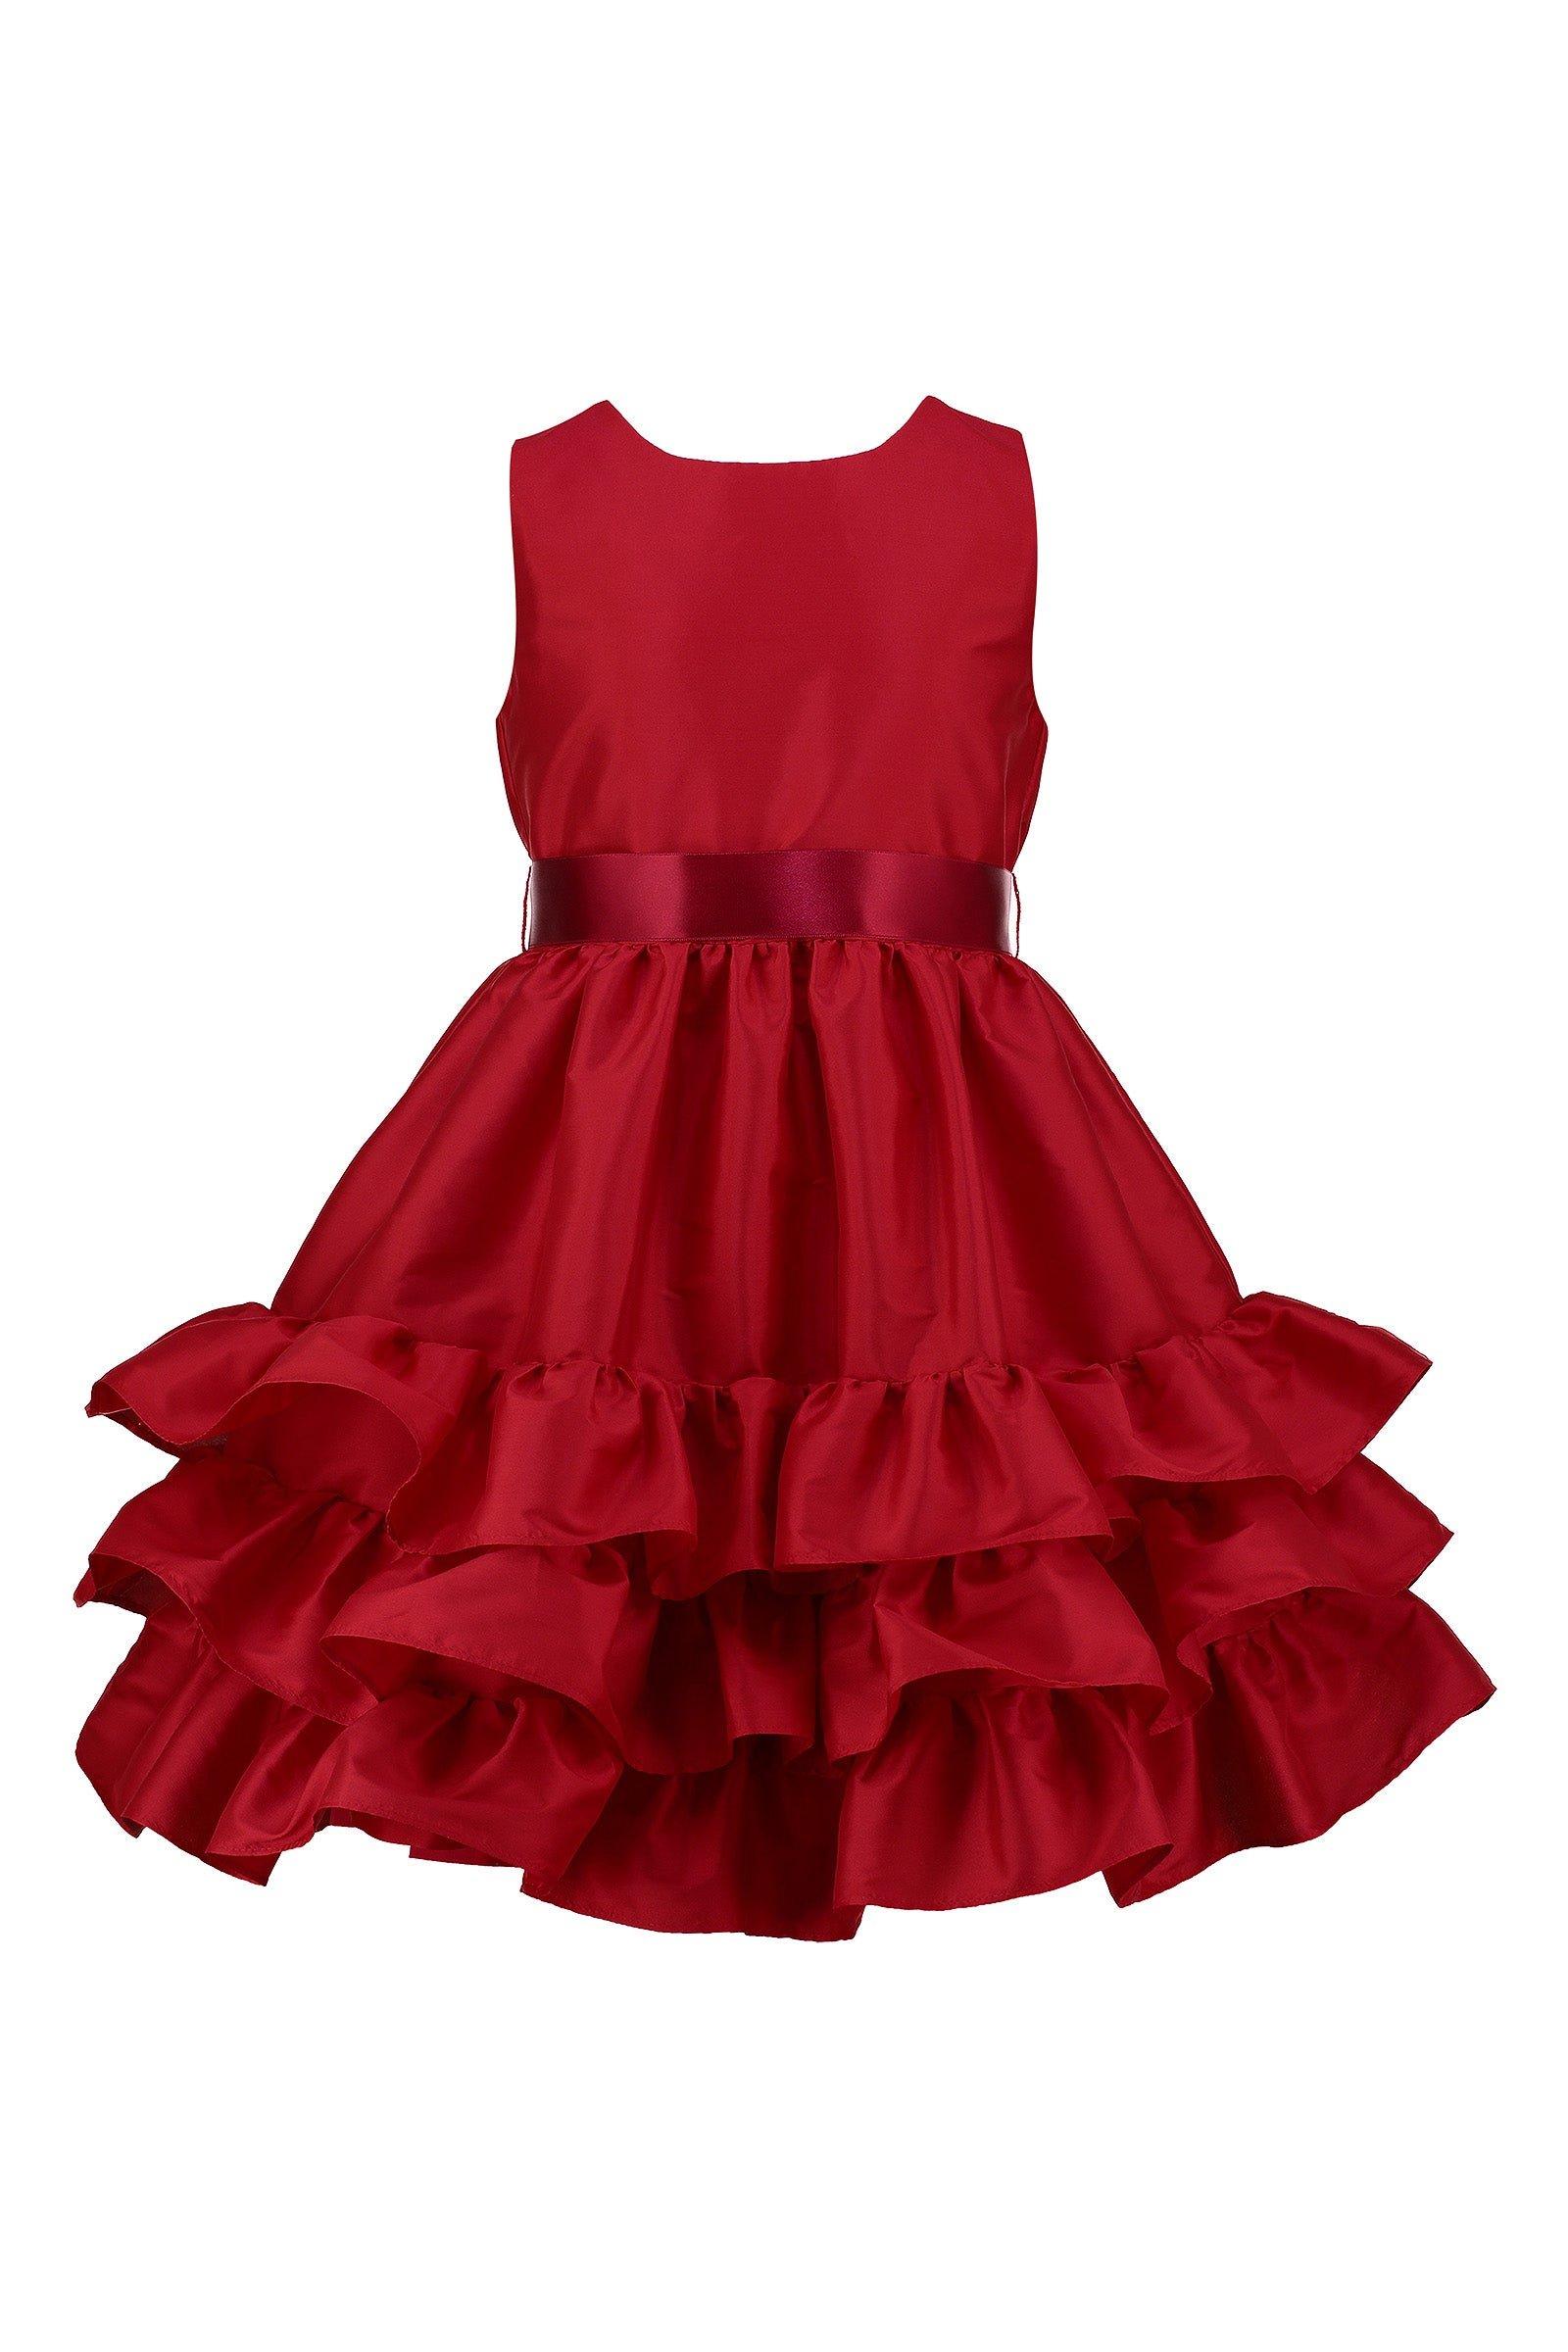 Атласное вечернее платье Arabella с оборками HOLLY HASTIE, красный пышное атласное вечернее платье для маленьких девочек детские многослойные платья с цветами для девочек платье принцессы с высоким и низк